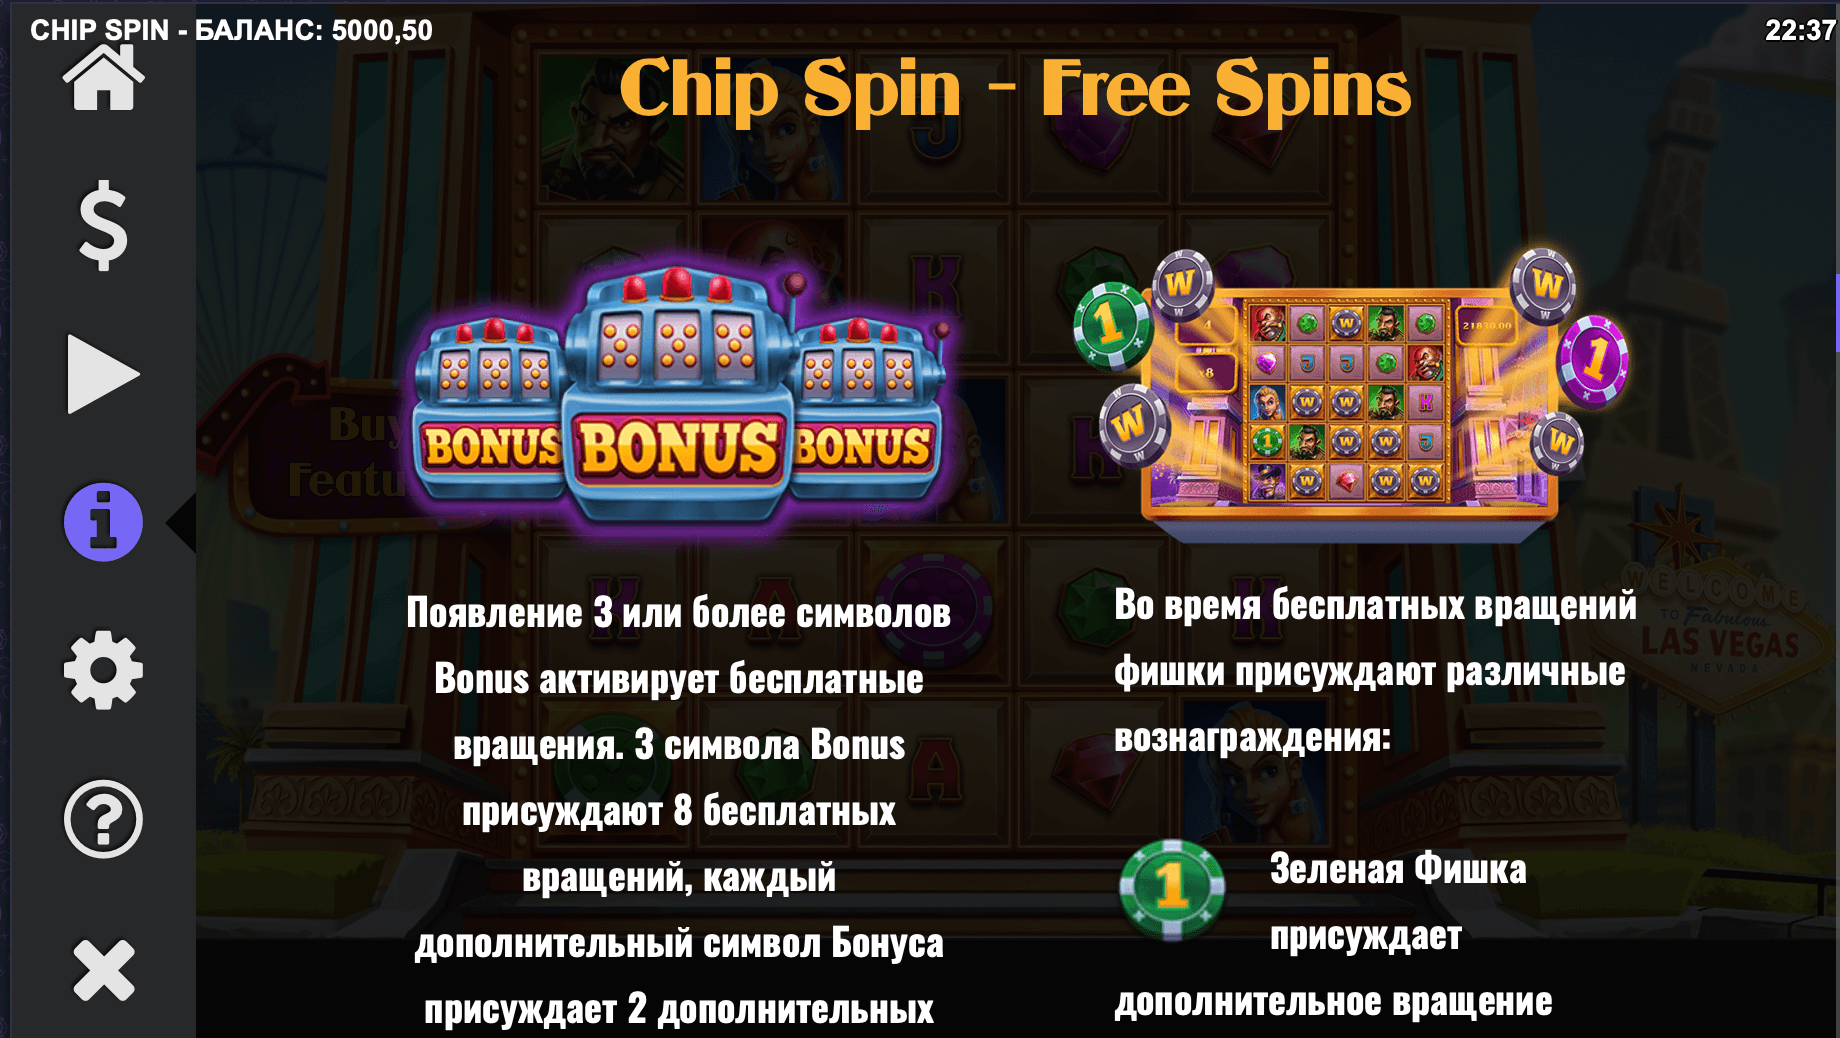 Chip Spin Processo do jogo